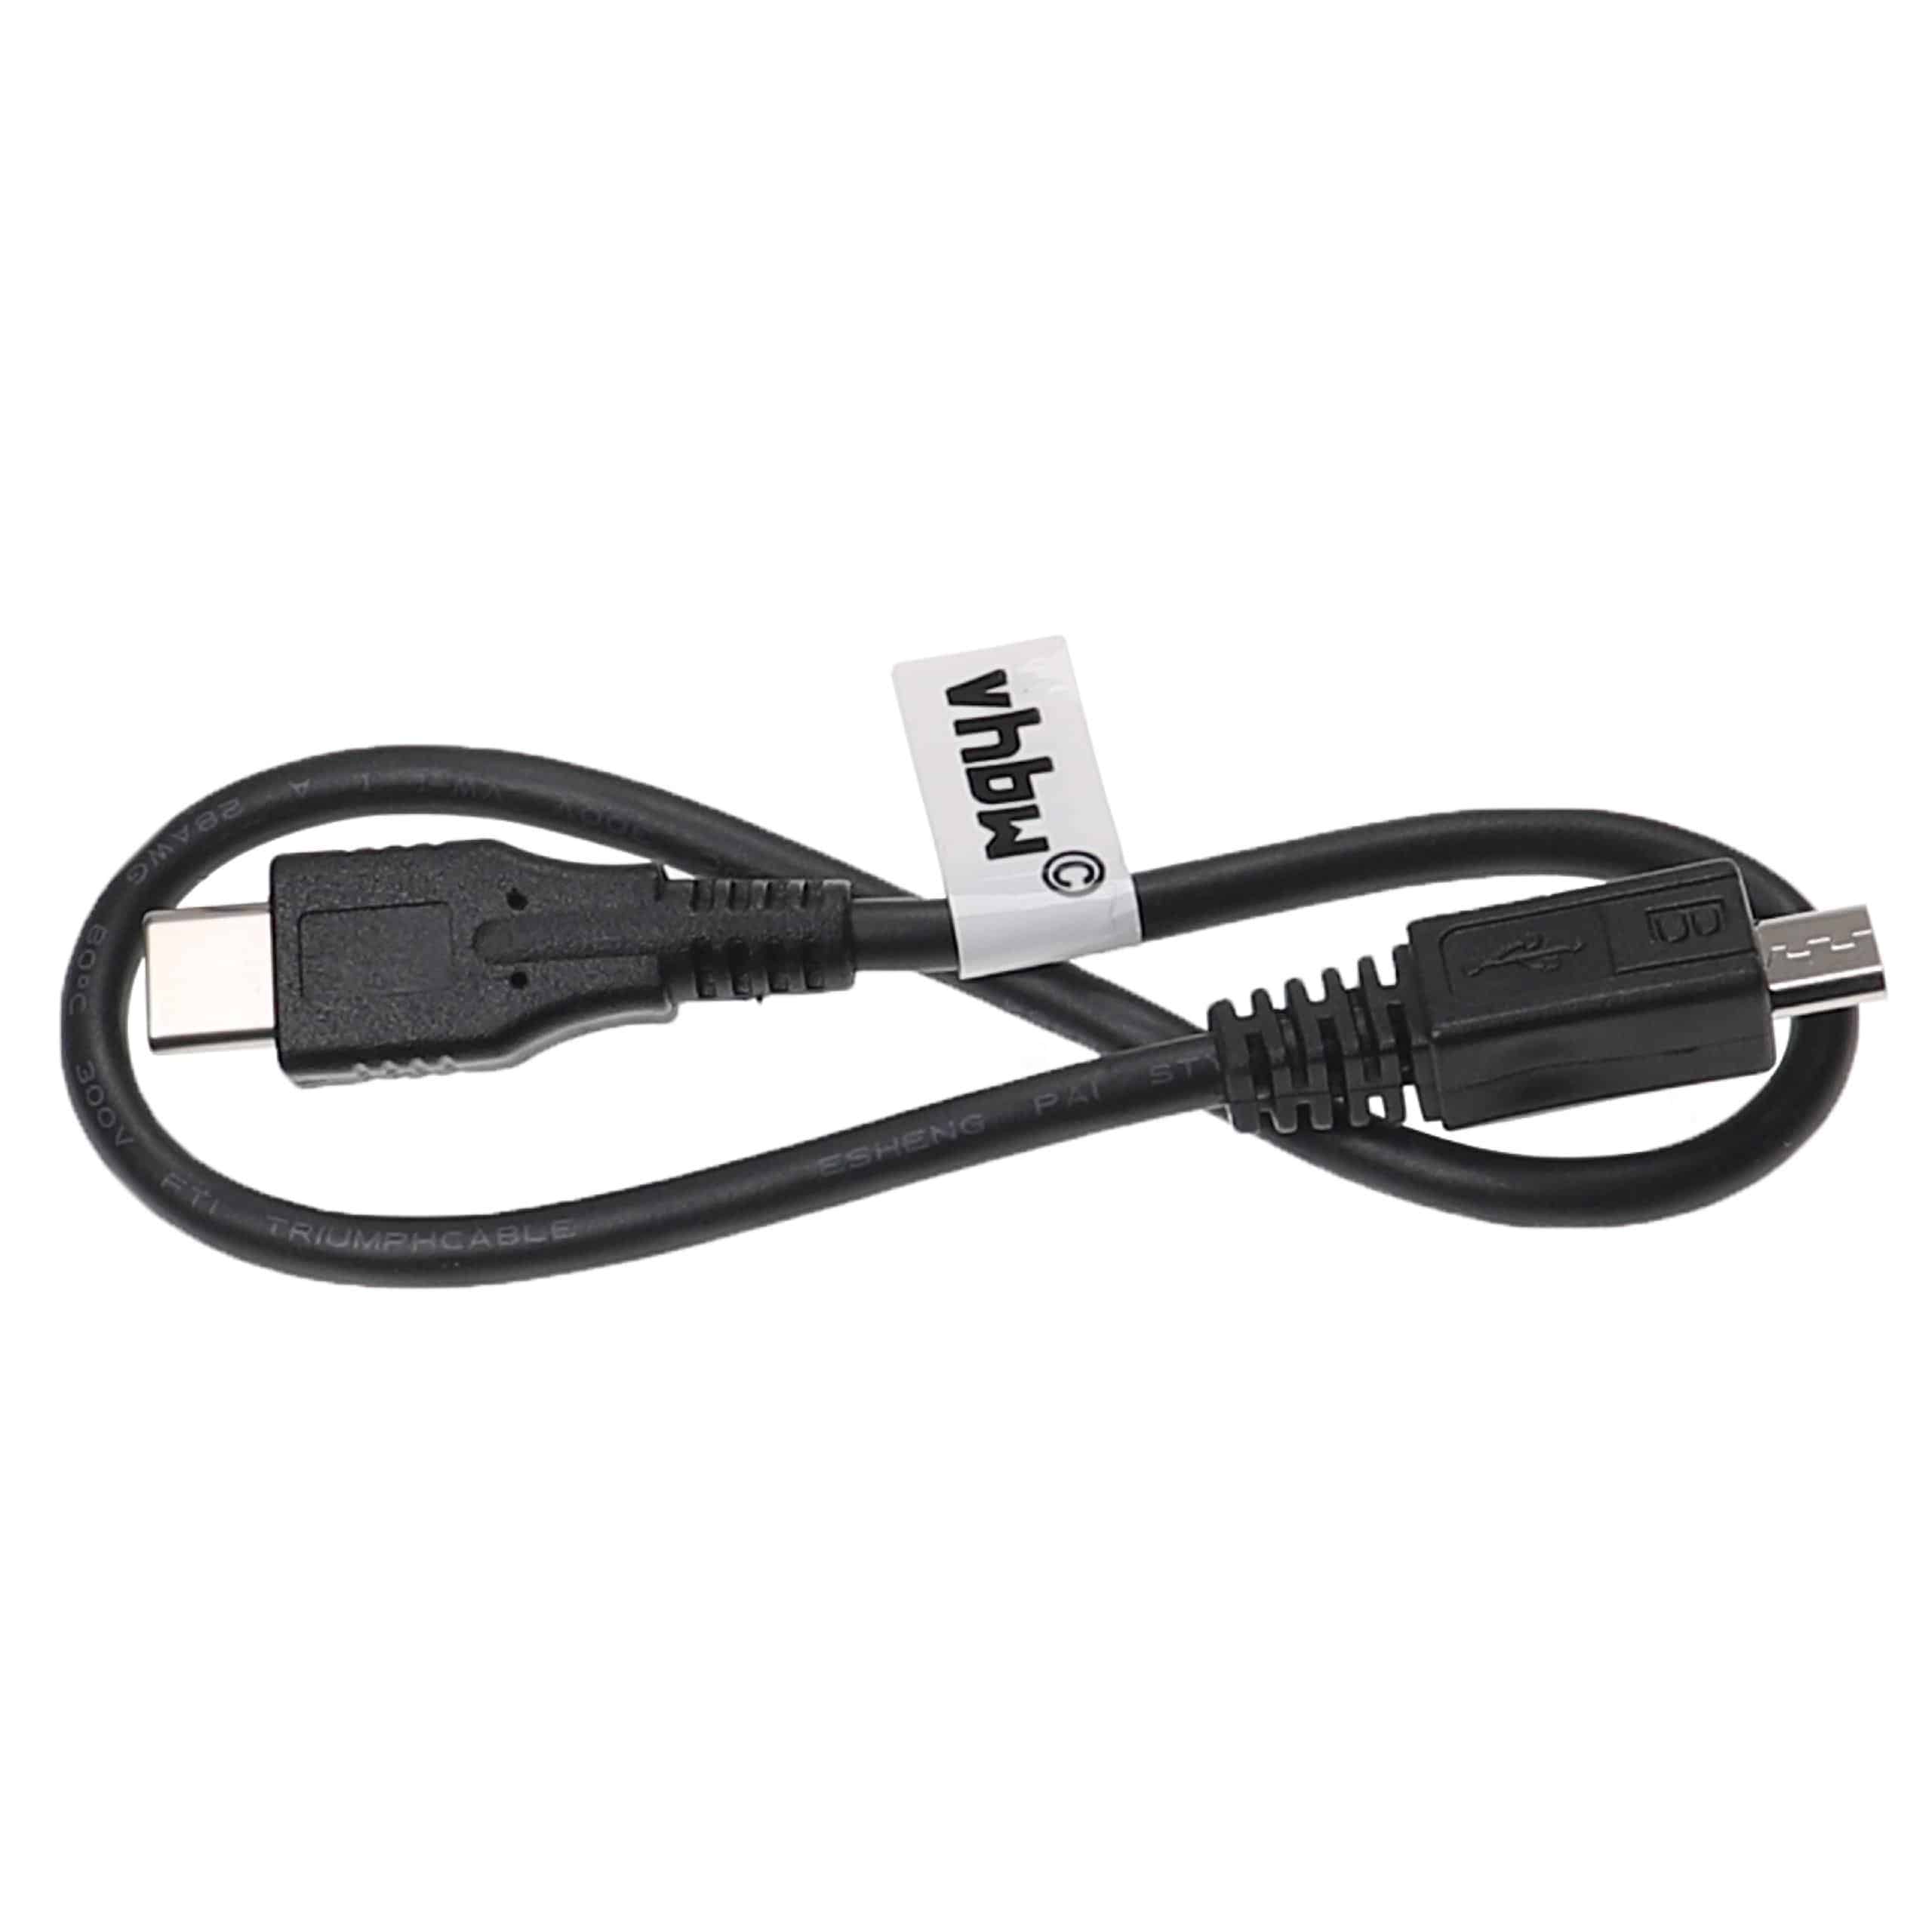 Cable USB Micro (USB 3.1 C a USB Micro) para varios dispositivos